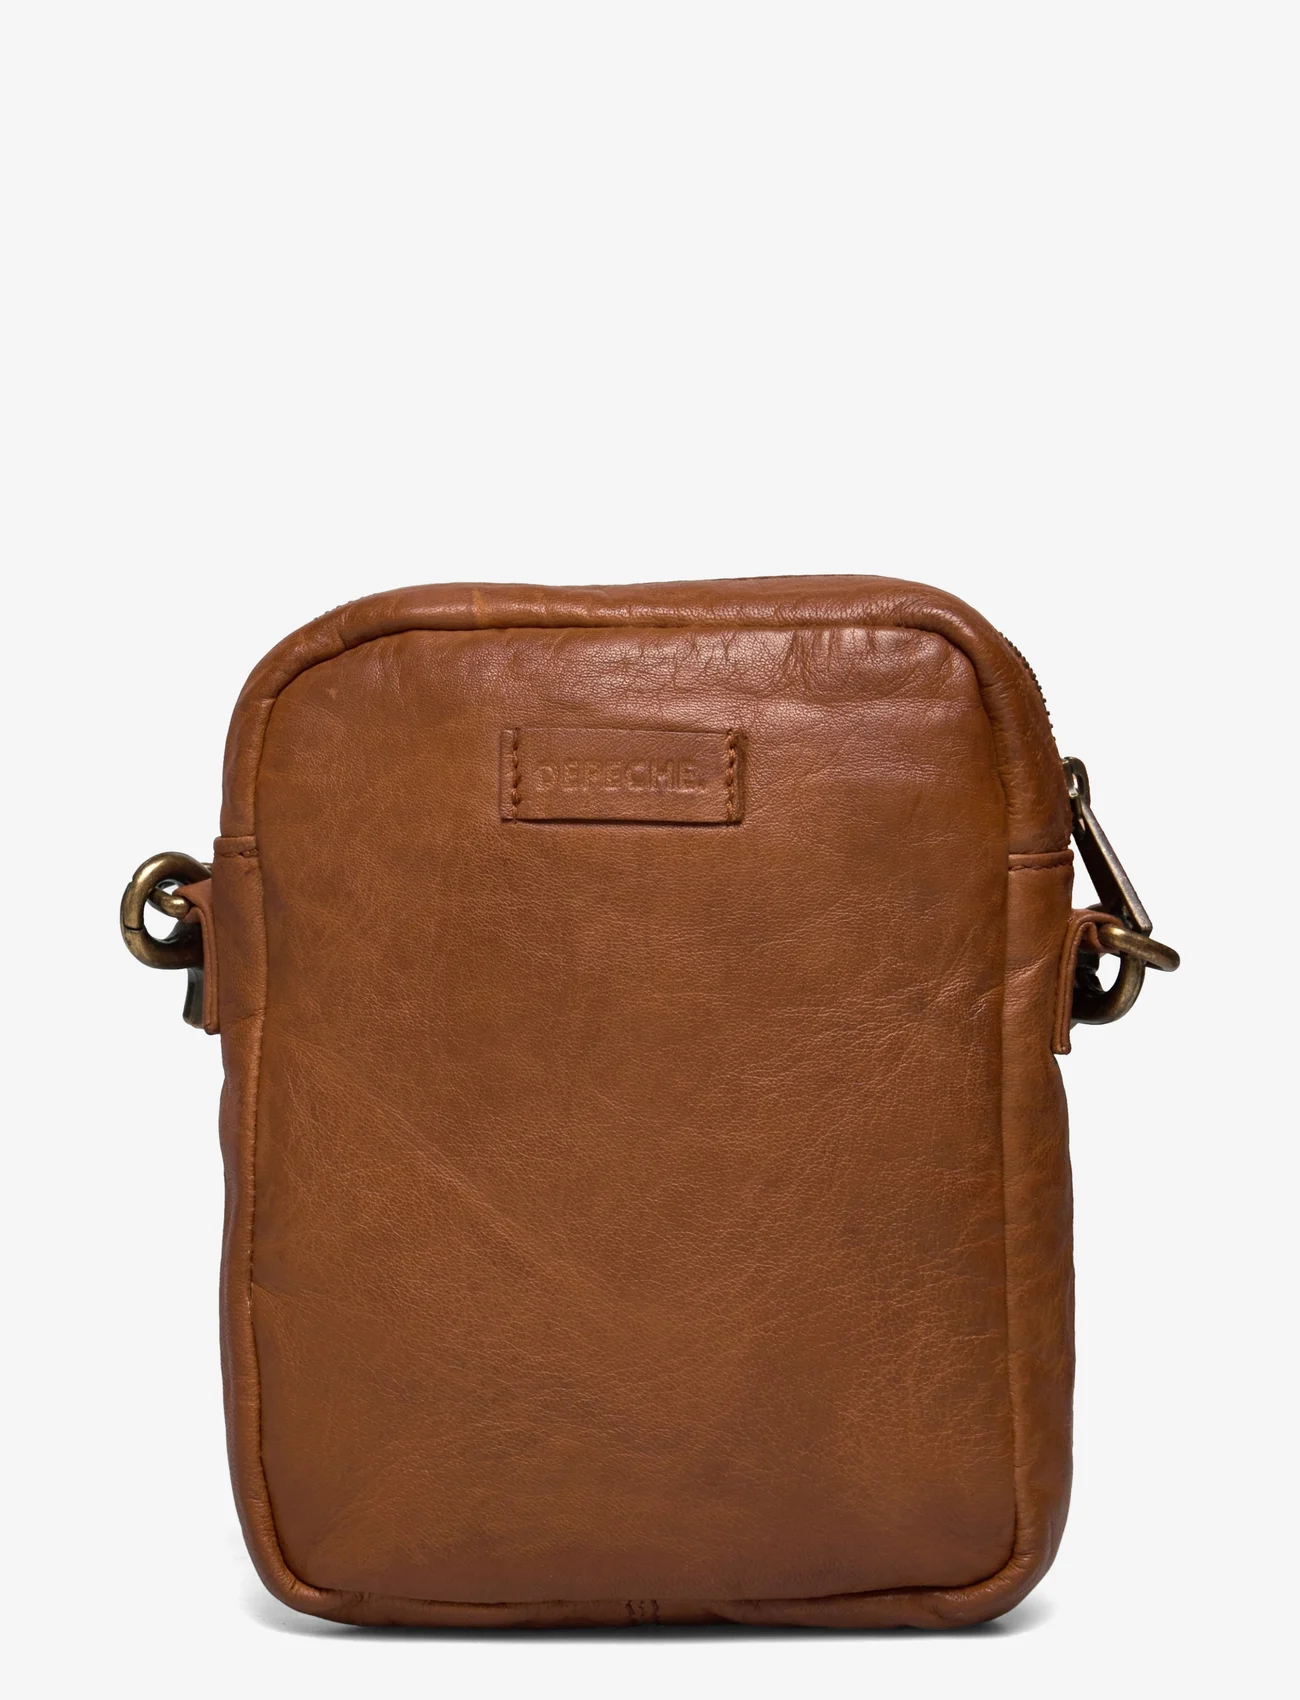 DEPECHE - Mobile bag - phone cases - 014 cognac - 1